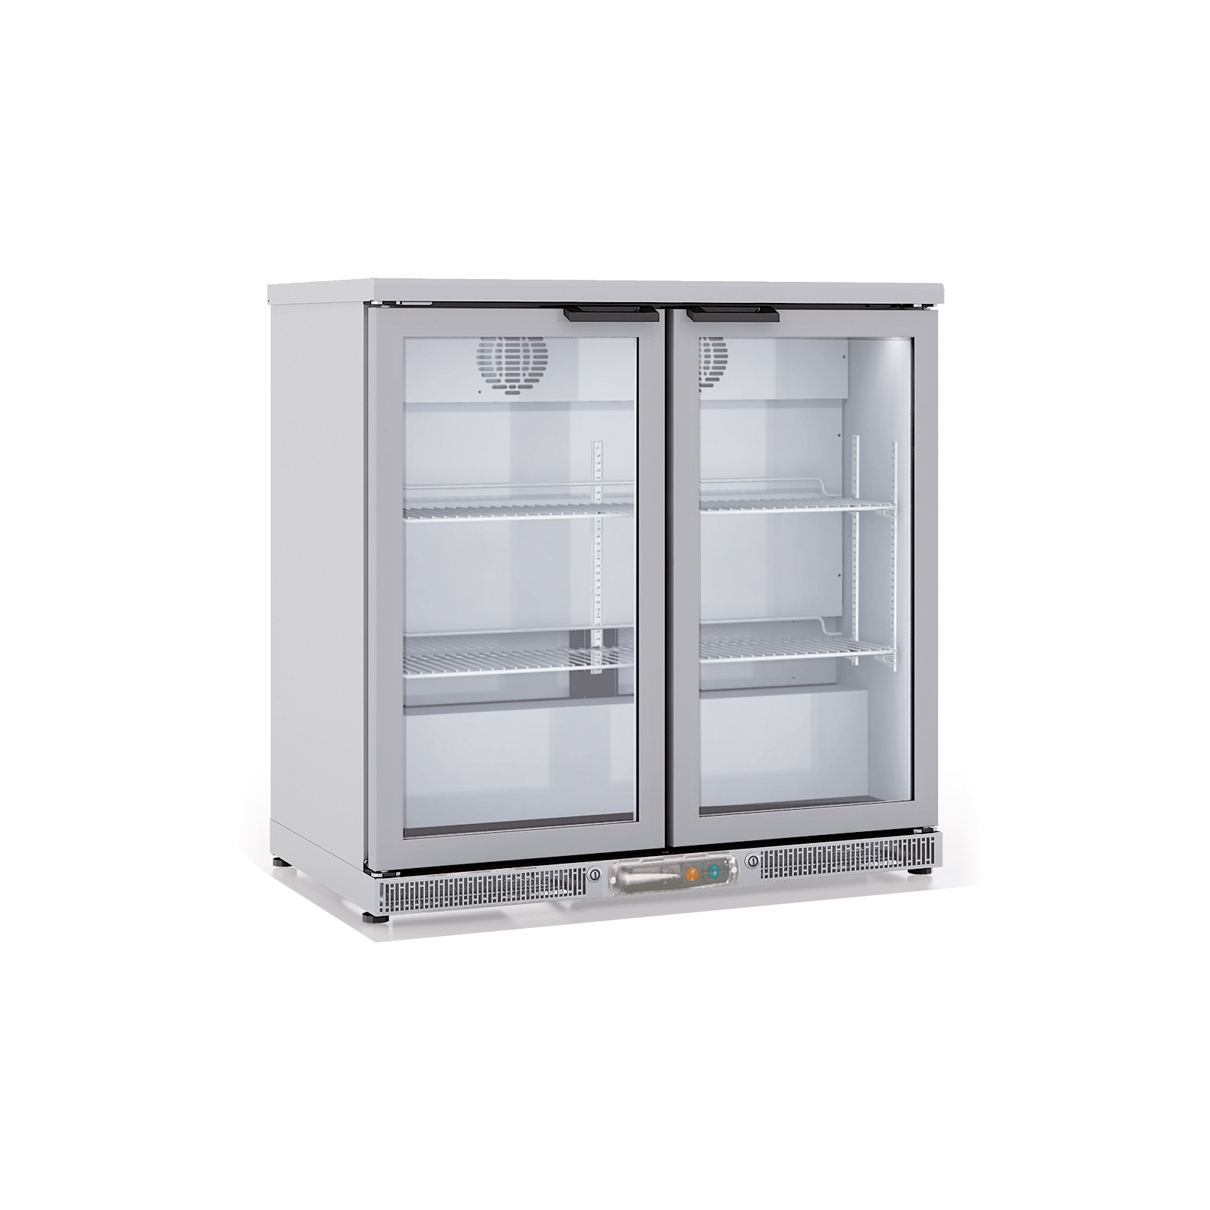 Vertical Refrigerated Display EHB-250-LI